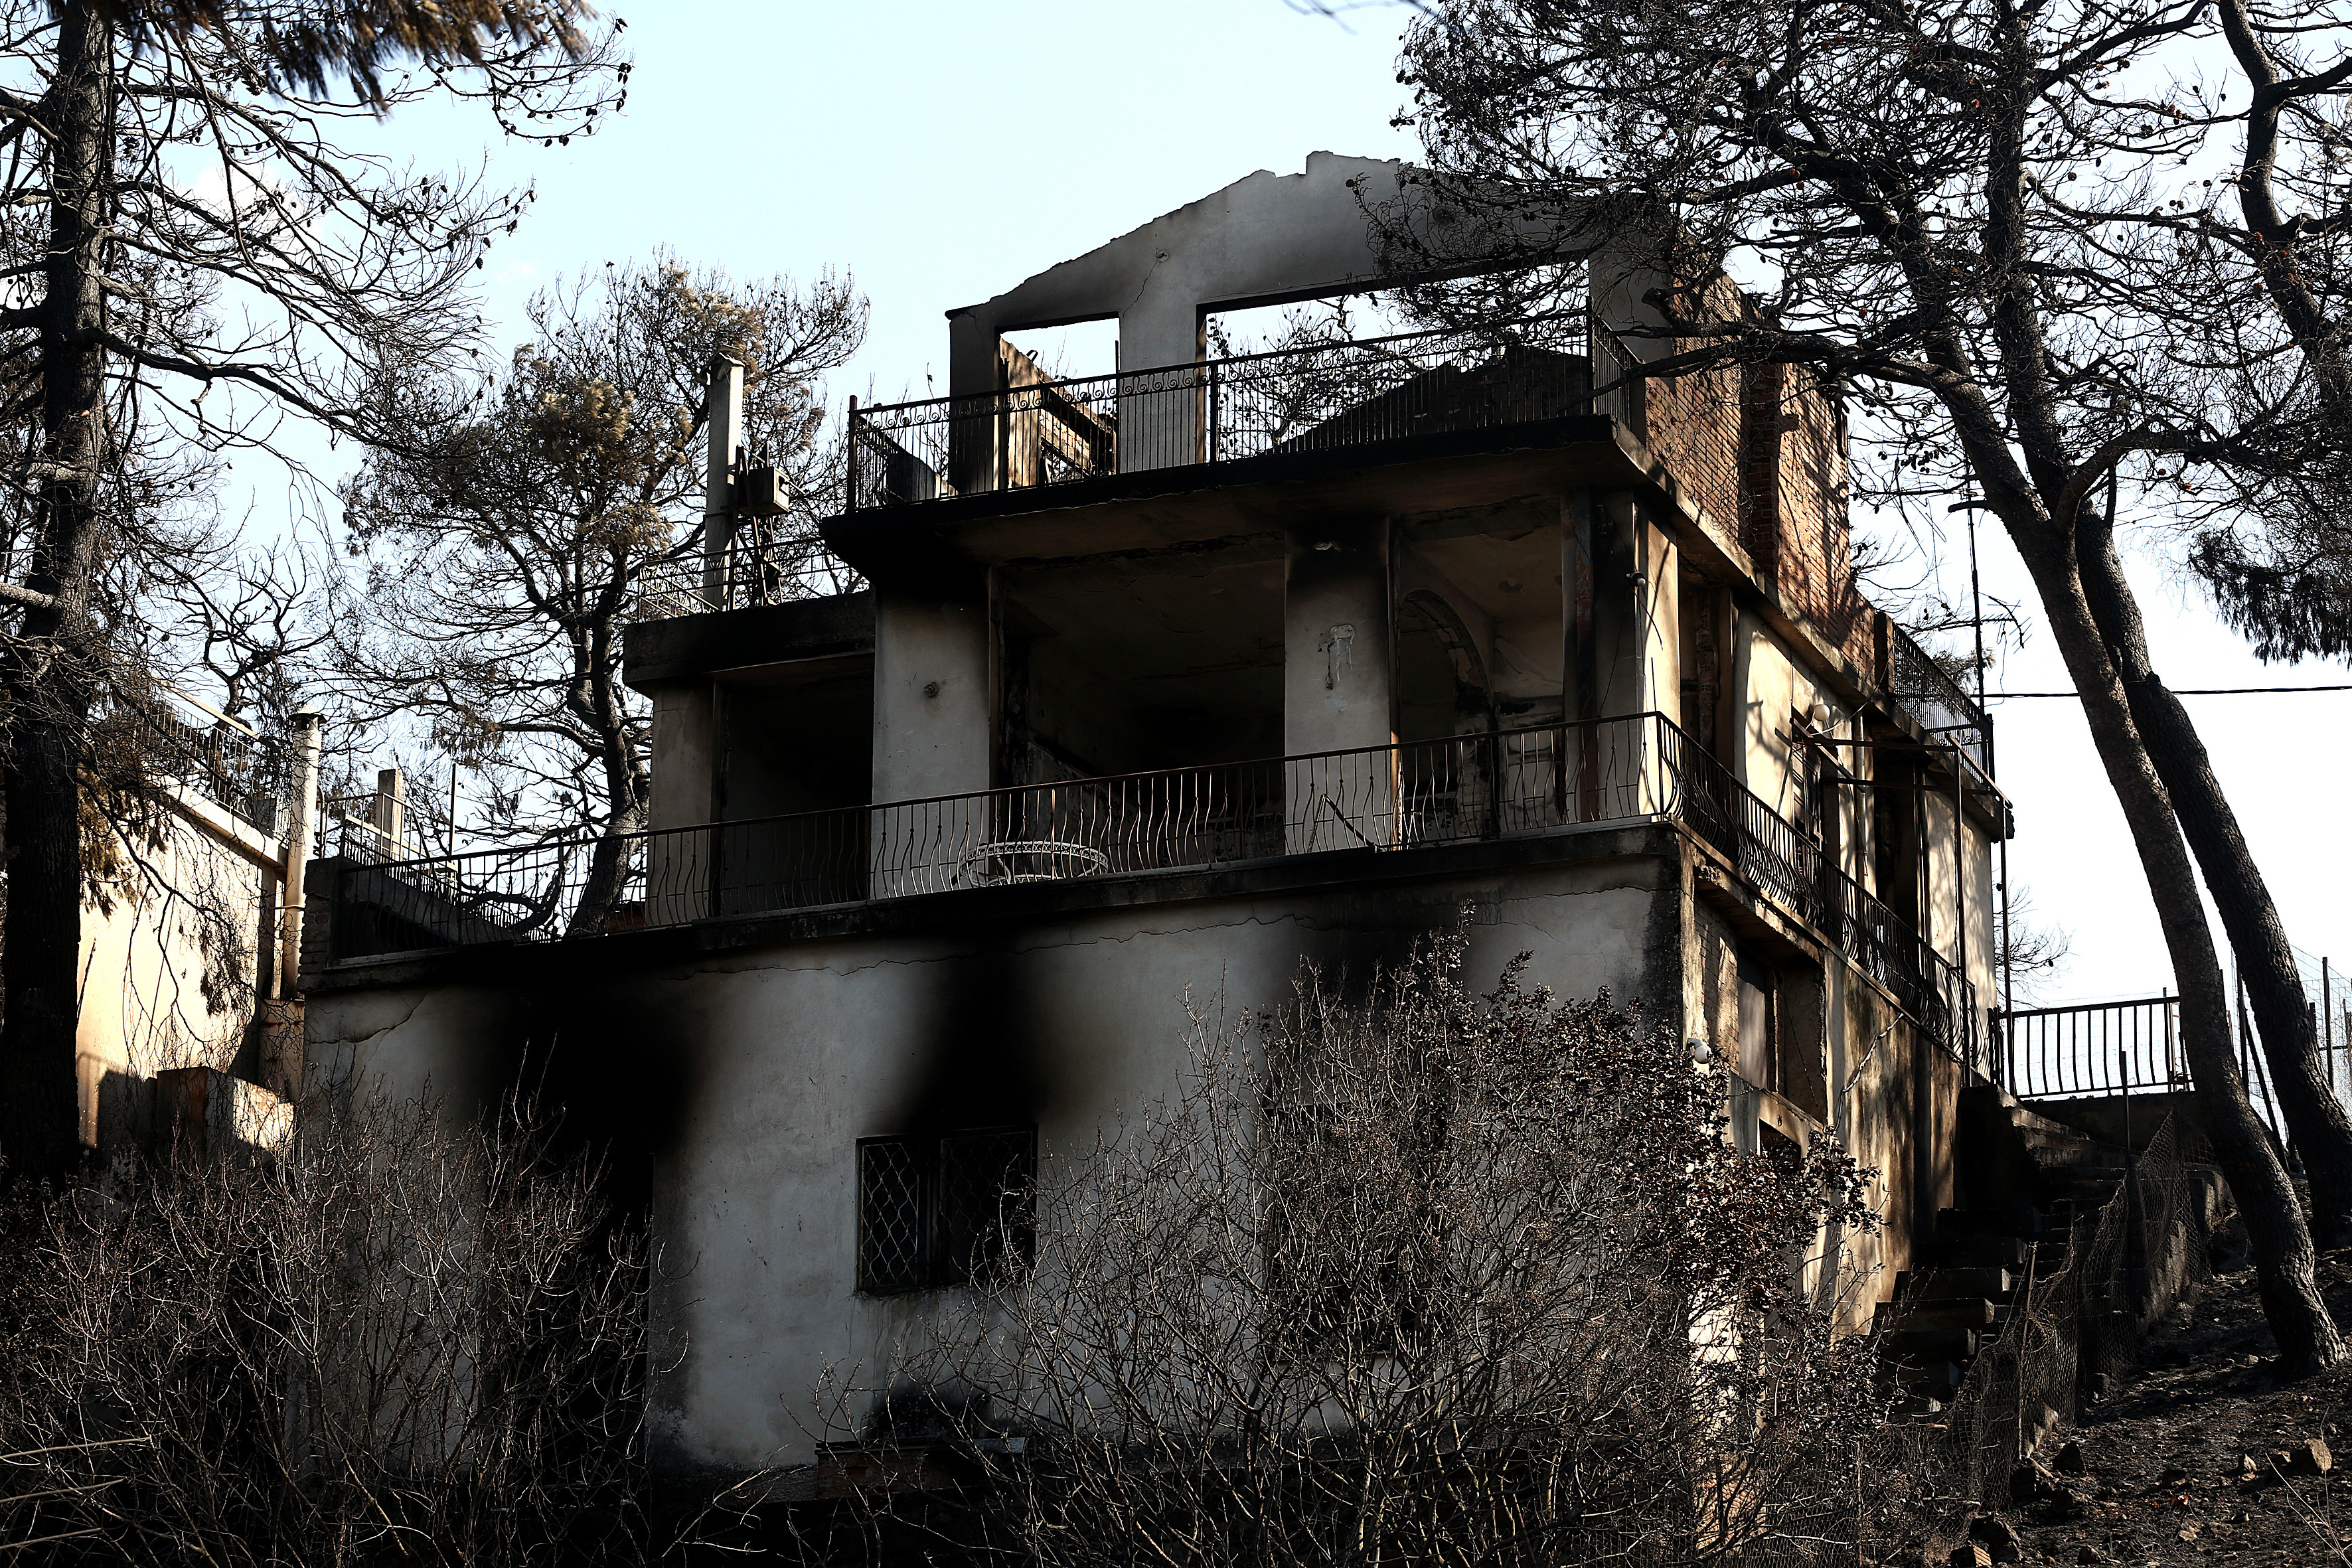 Δράσεις για την αποκατάσταση 7 οικογενειών πυρόπληκτων από τον οικισμό της Κίρκης Αλεξανδρούπολης